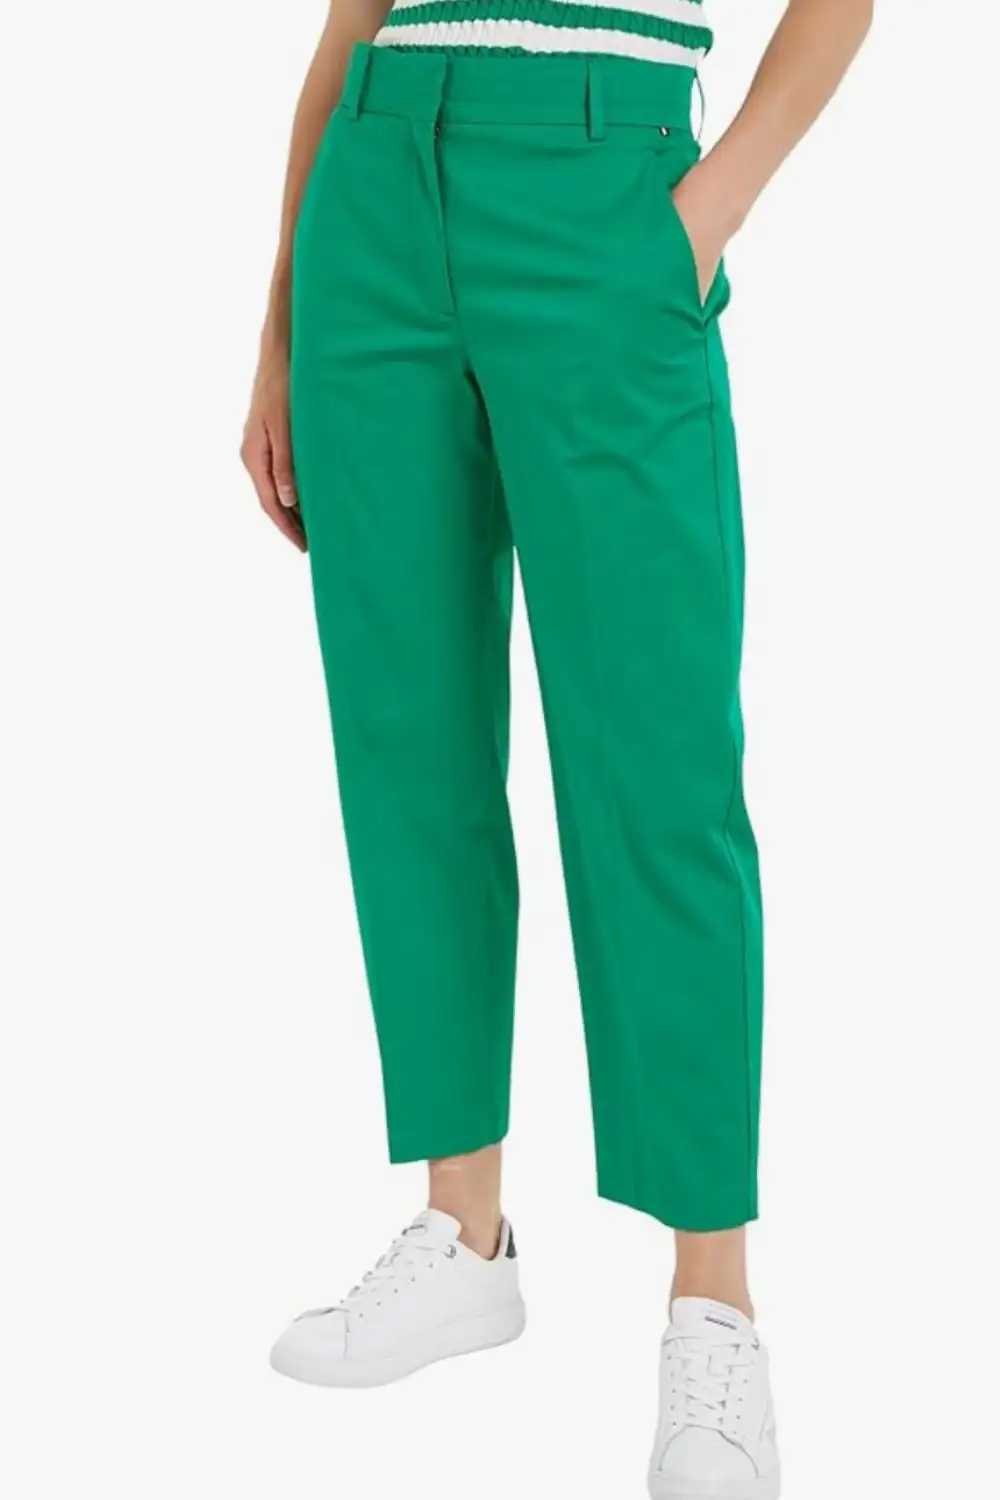 pantalones verdes 3